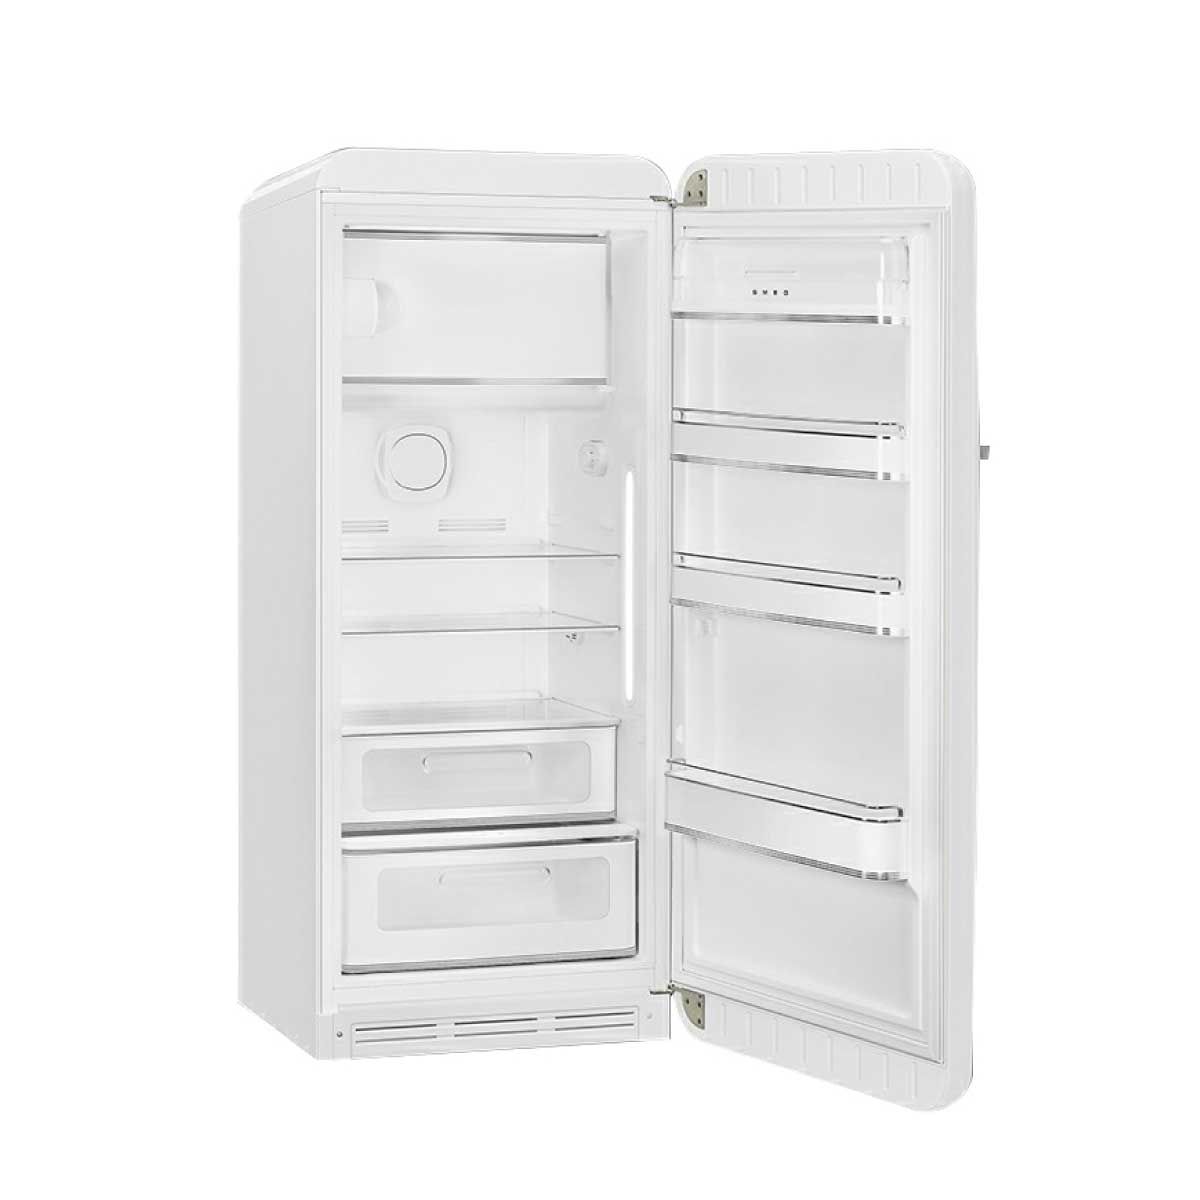 SMEG ตู้เย็น 1 ประตู 9.93 Q. สไตล์ 50 Retro Aesthetic รุ่น FAB28RWH5 สีขาว